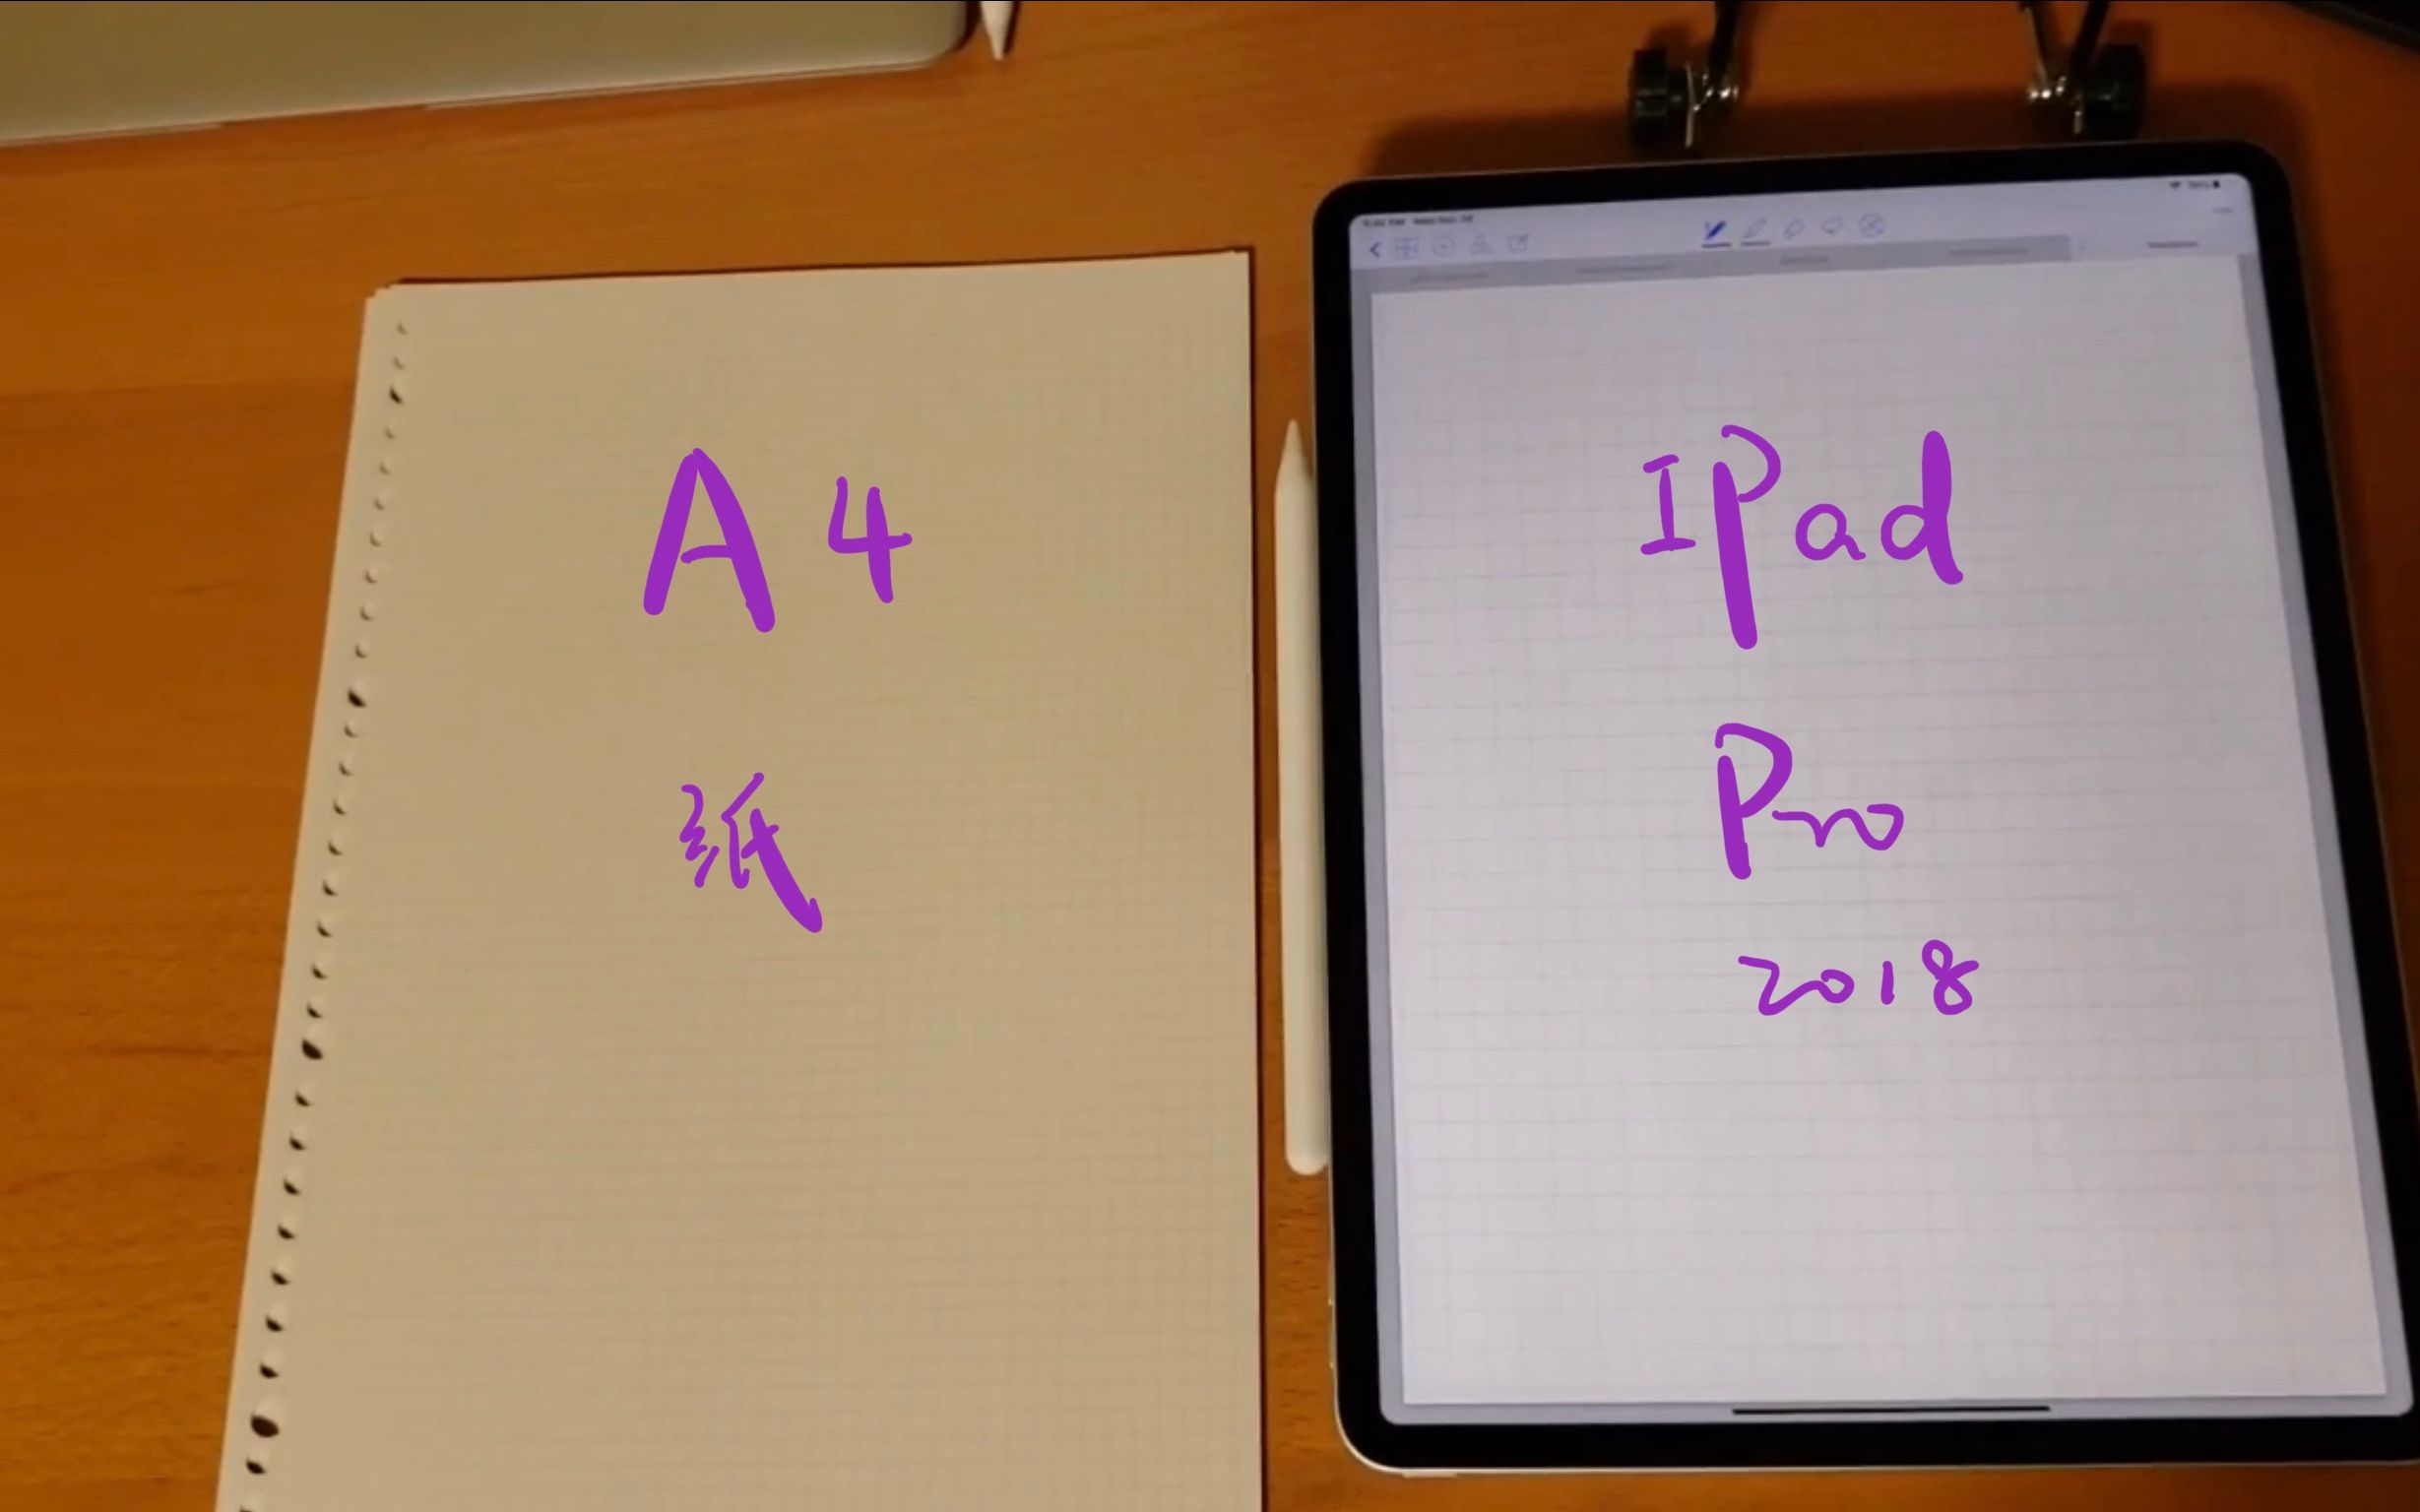 【ipad pro 2018】 【手写体验】与廉价版ipad的对比,与a4纸的对比